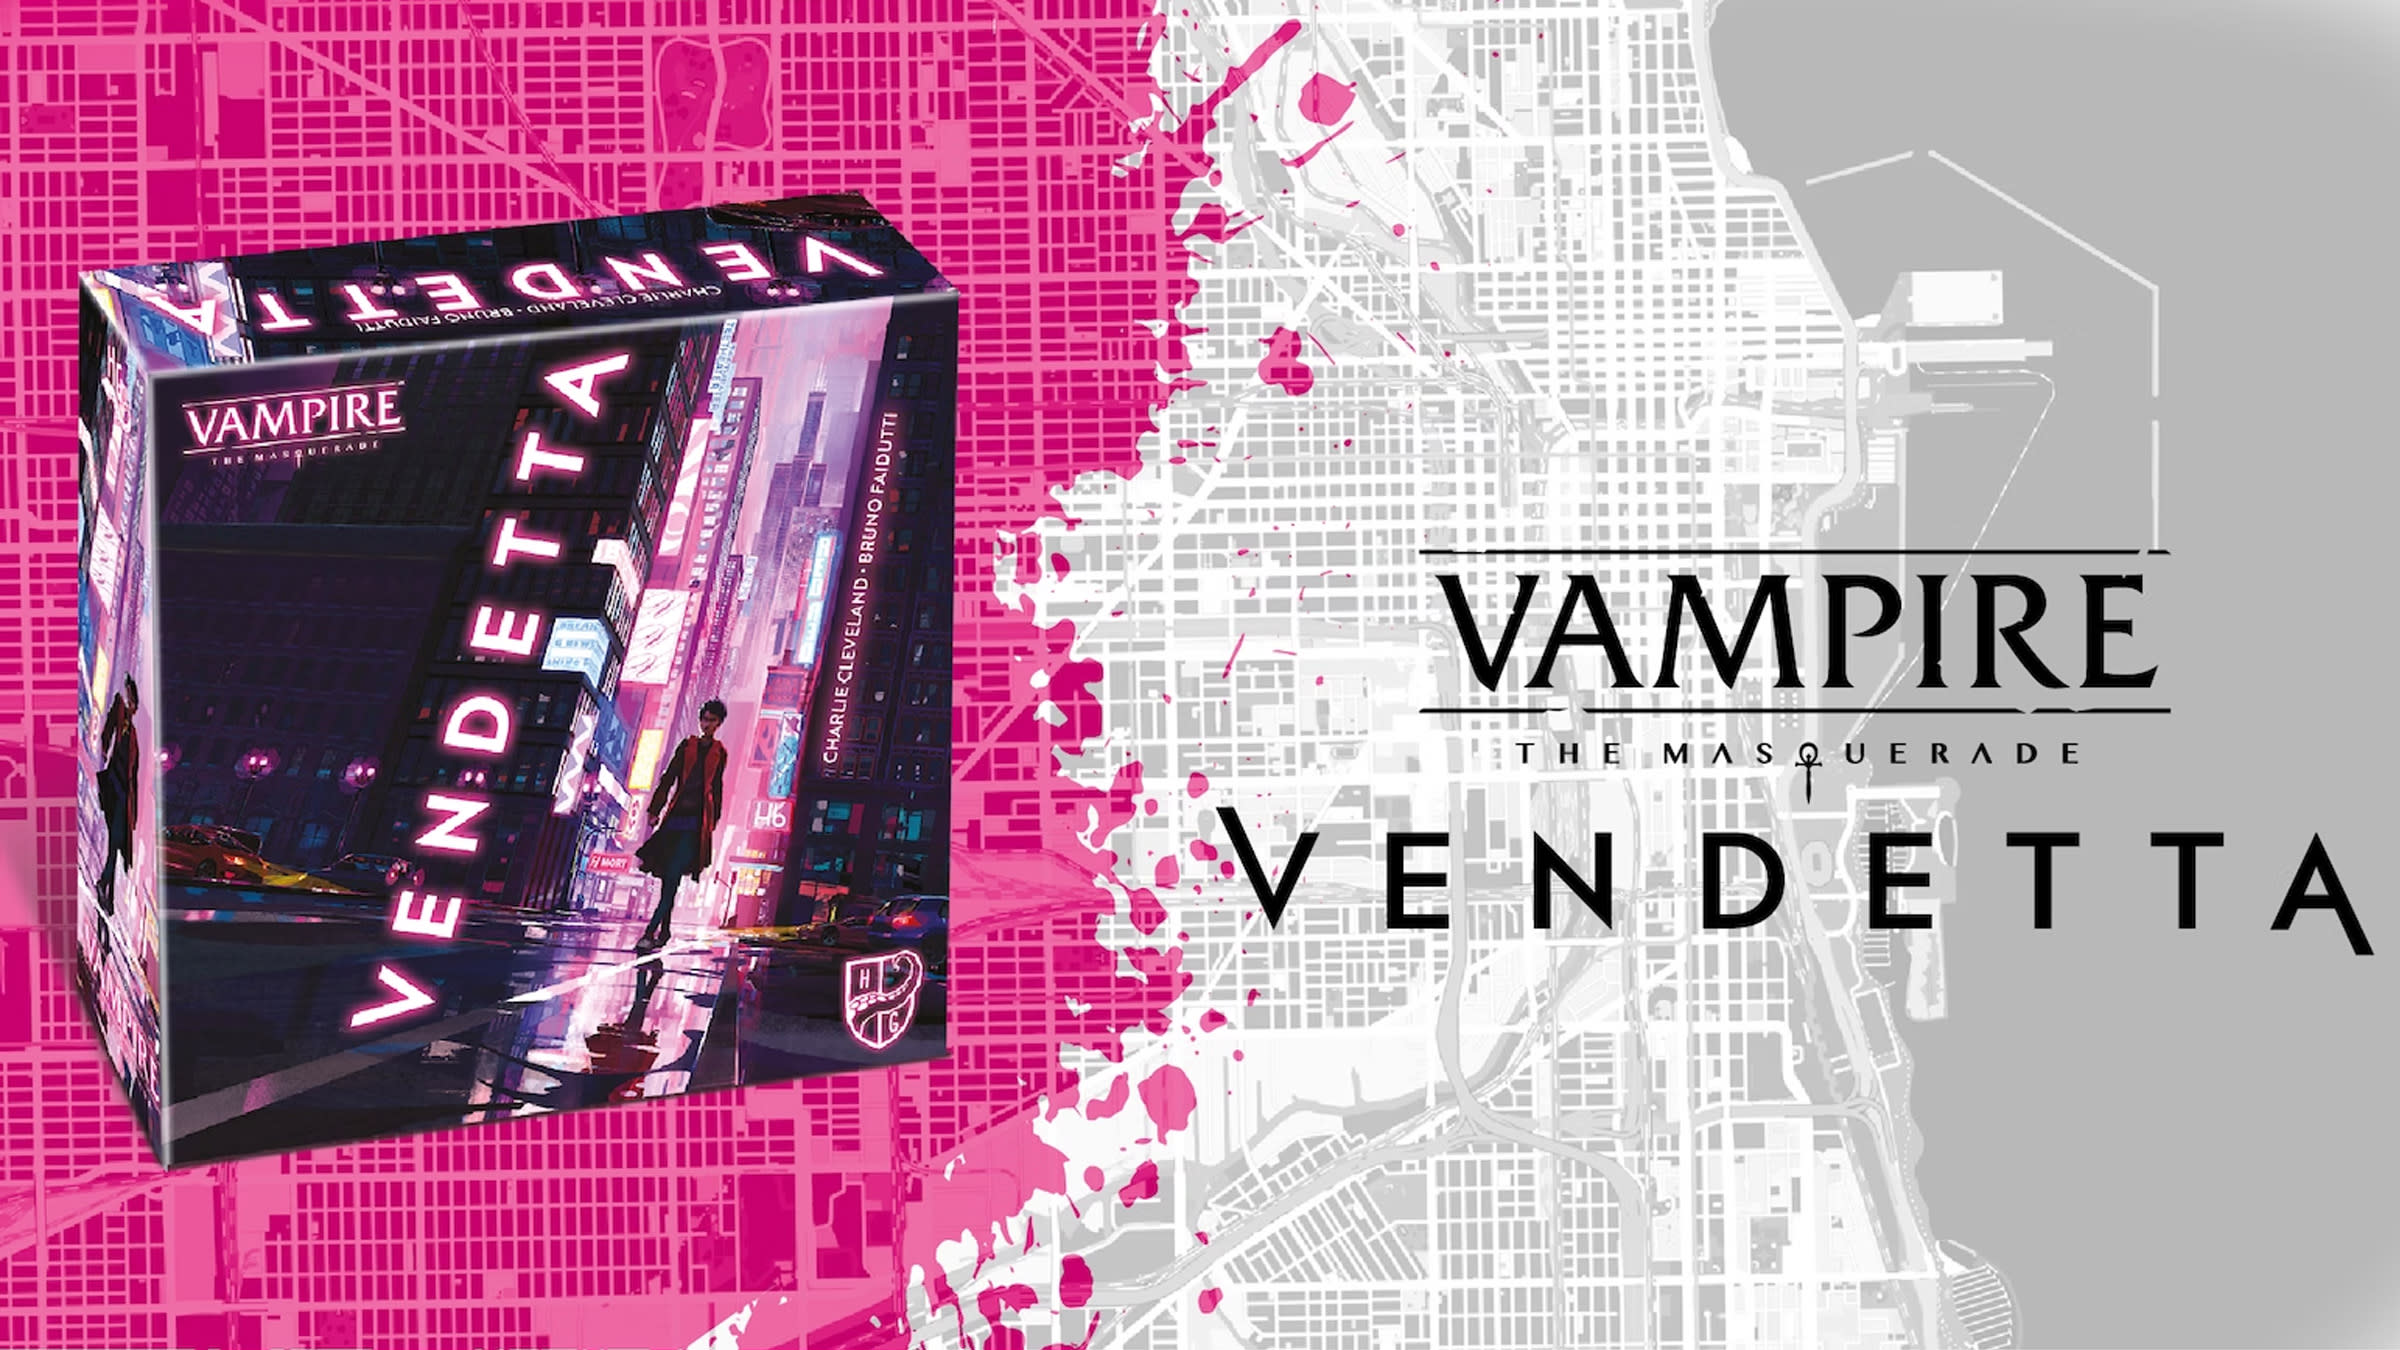 Vampire: The Masquerade - Vendetta